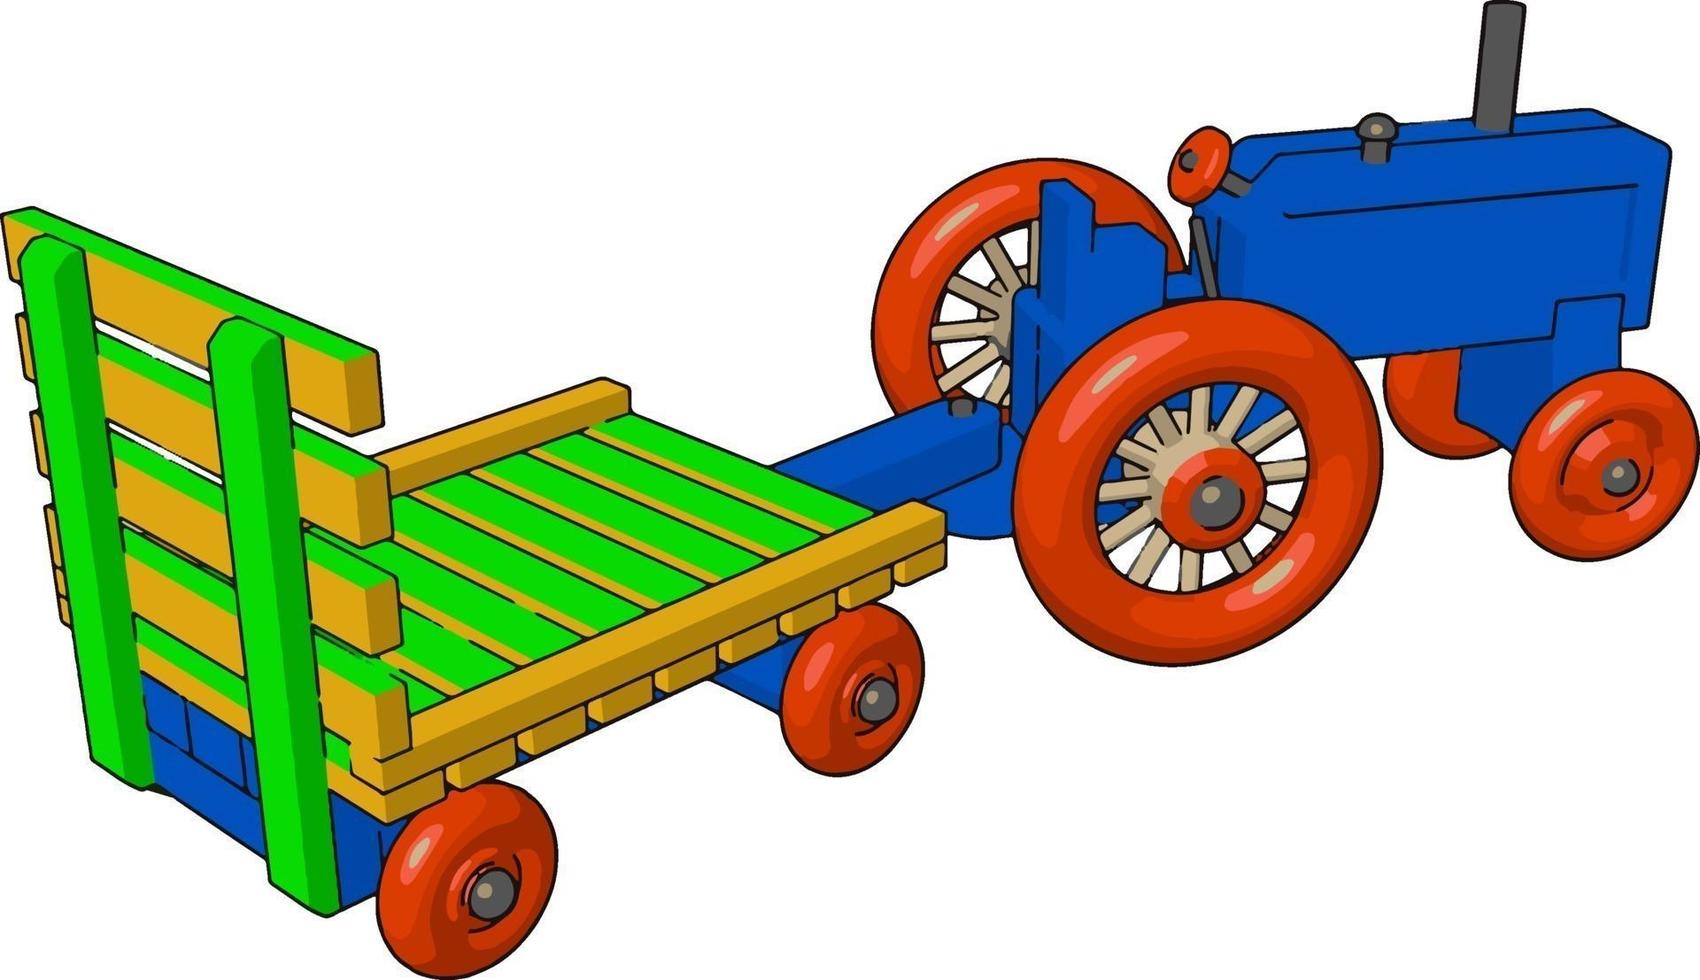 azul pequeno traktor, ilustração, vetor em fundo branco.